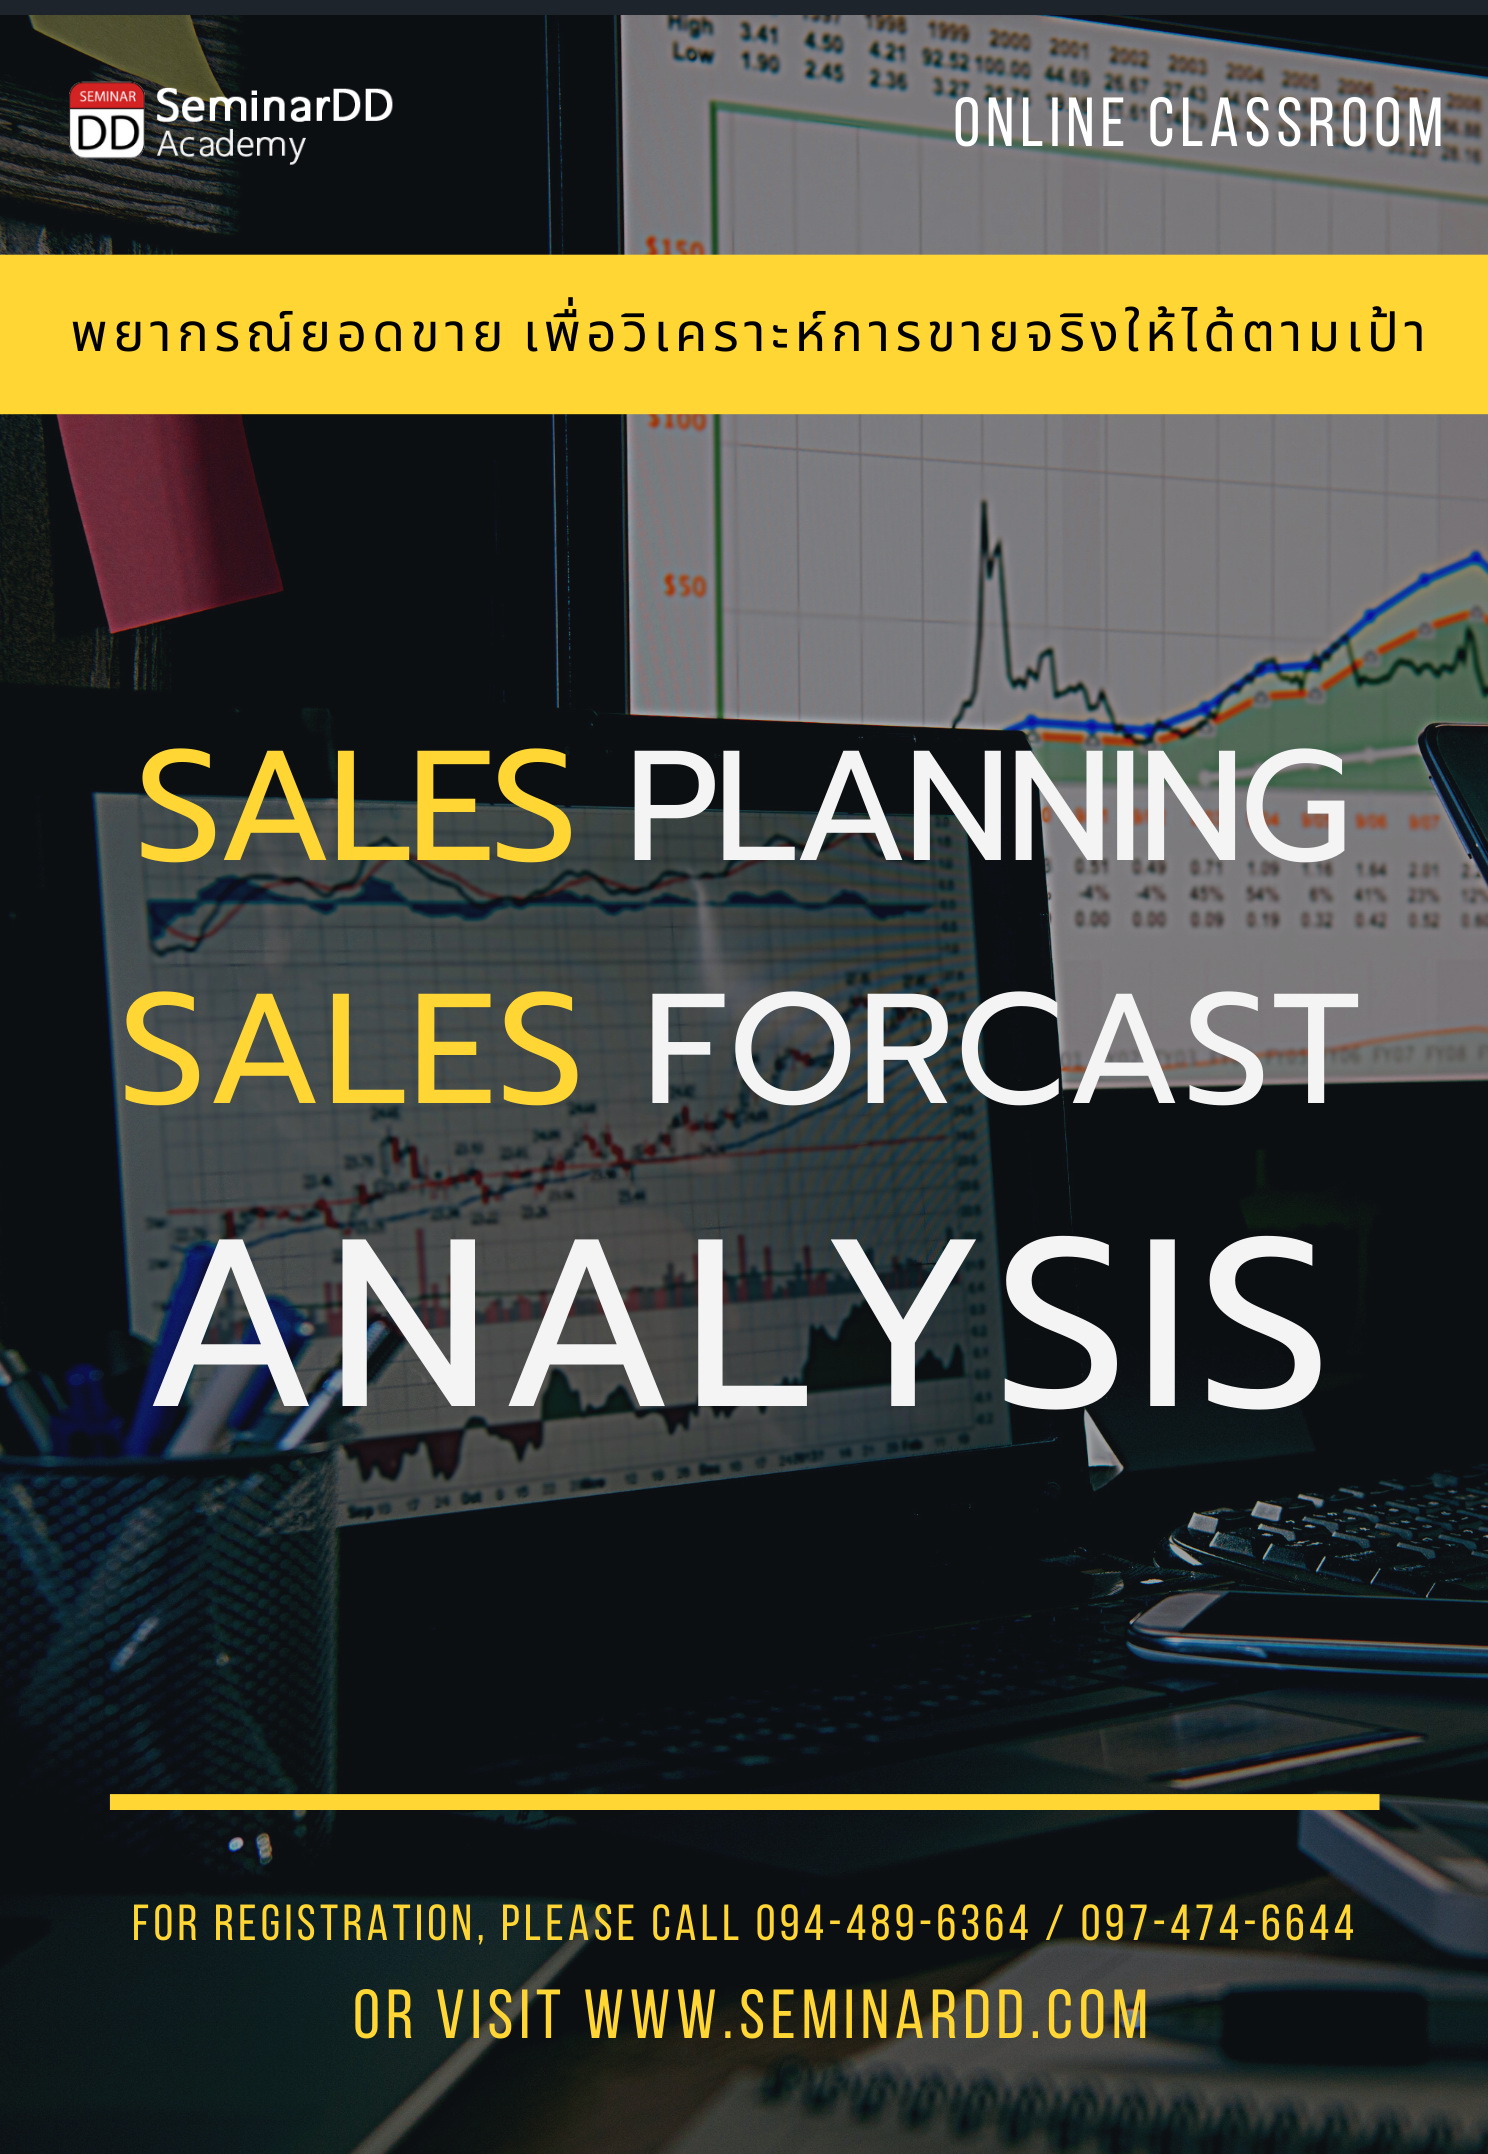 อบรม หลักสูตร : เทคนิคการพยากรณ์ยอดขายเพื่อวิเคราะห์การขายจริงให้ได้ตามเป้า ( Sales Planning & Sales Forecast Analysis ) อบรมในรูปแบบ Classroom